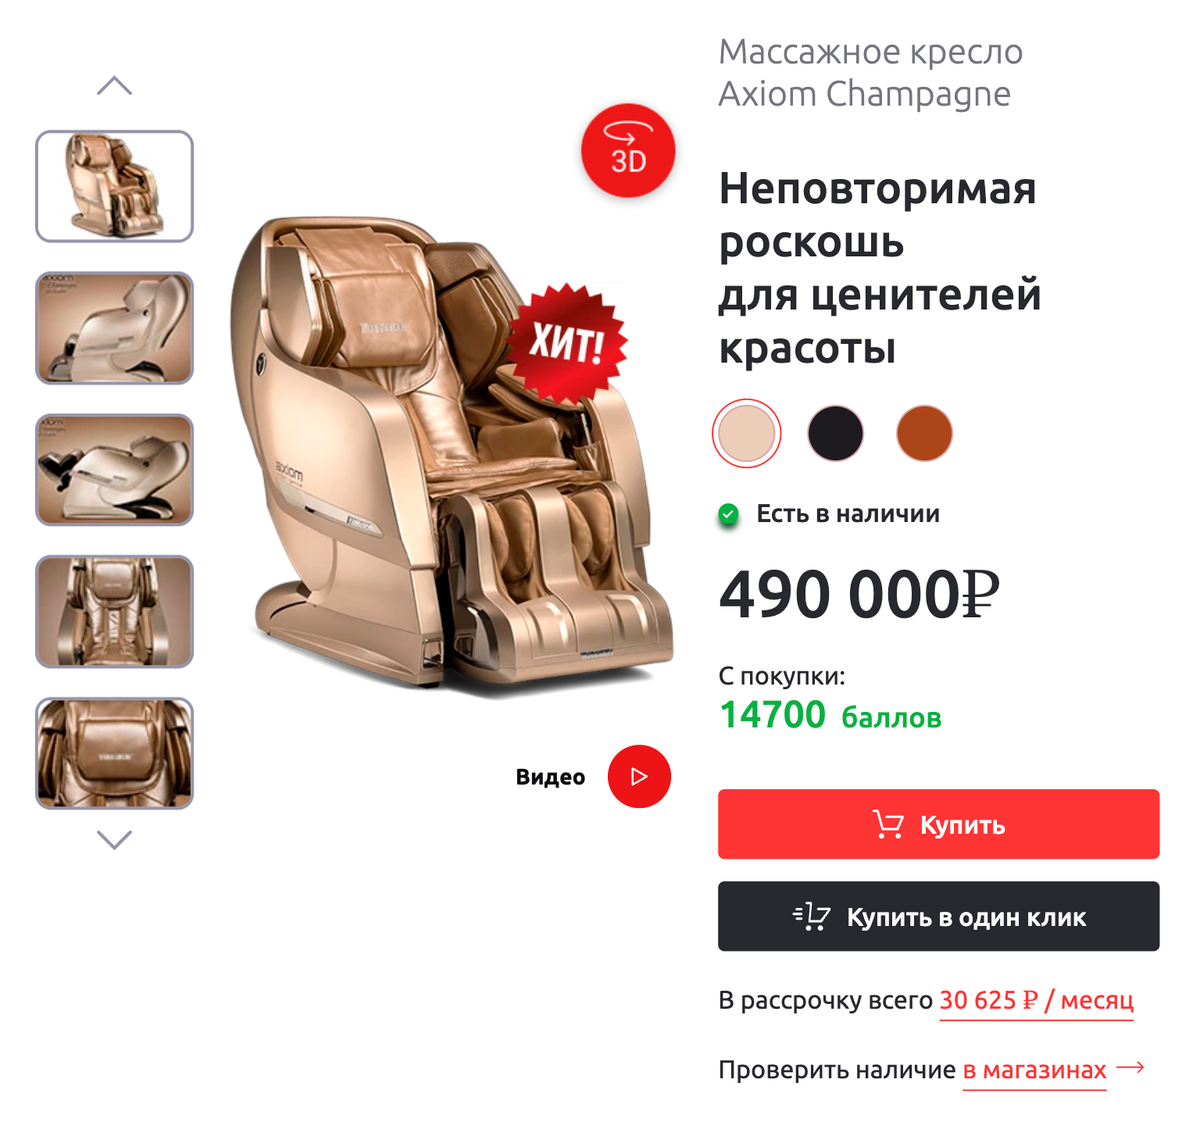 Когда-то мы хотели купить себе такое кресло — всерьез рассматривали этот вариант за полмиллиона. Спасло критическое мышление, ведь полмиллиона — это фундамент для&nbsp;дома! Поэтому иногда я просто зависаю в нем в спортзале или где-нибудь в гостинице. Источник: yamaguchi.ru